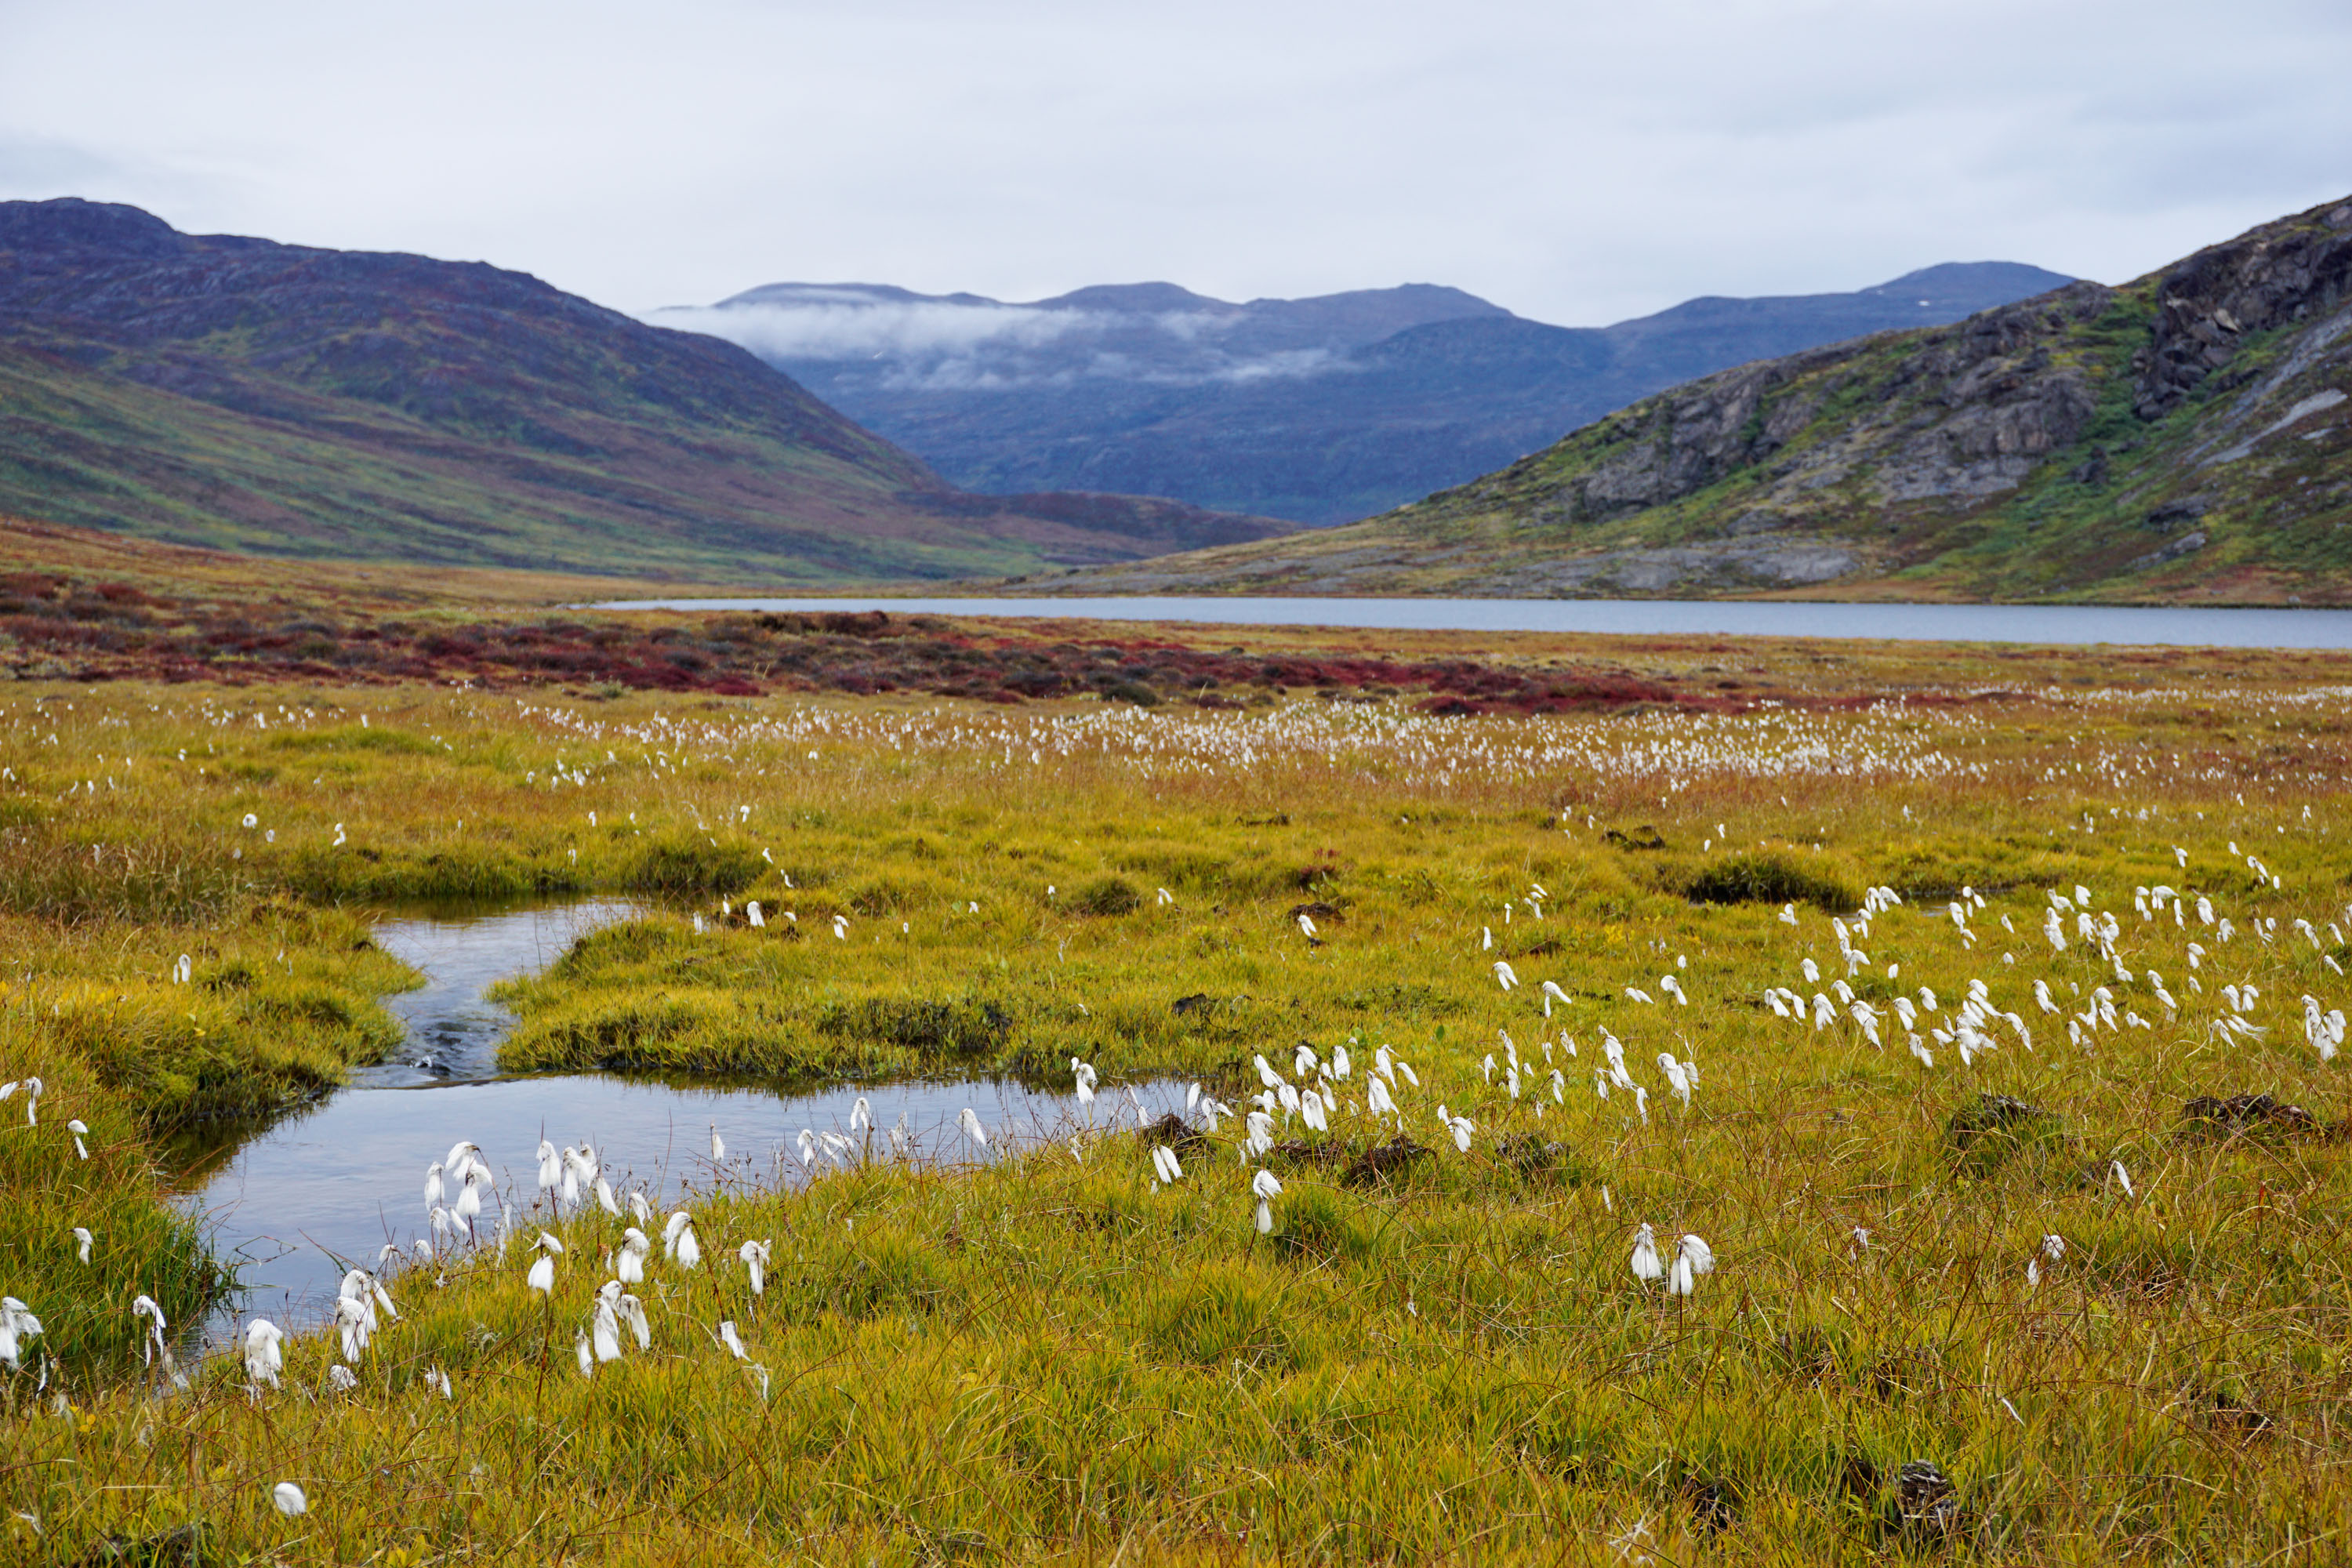 ft säumen Feuchtwiesen mit blühendem Wollgras den Arctic Circle Trail – hier sinddie Kriechweiden noch winzig. © Thorsten Hoyer